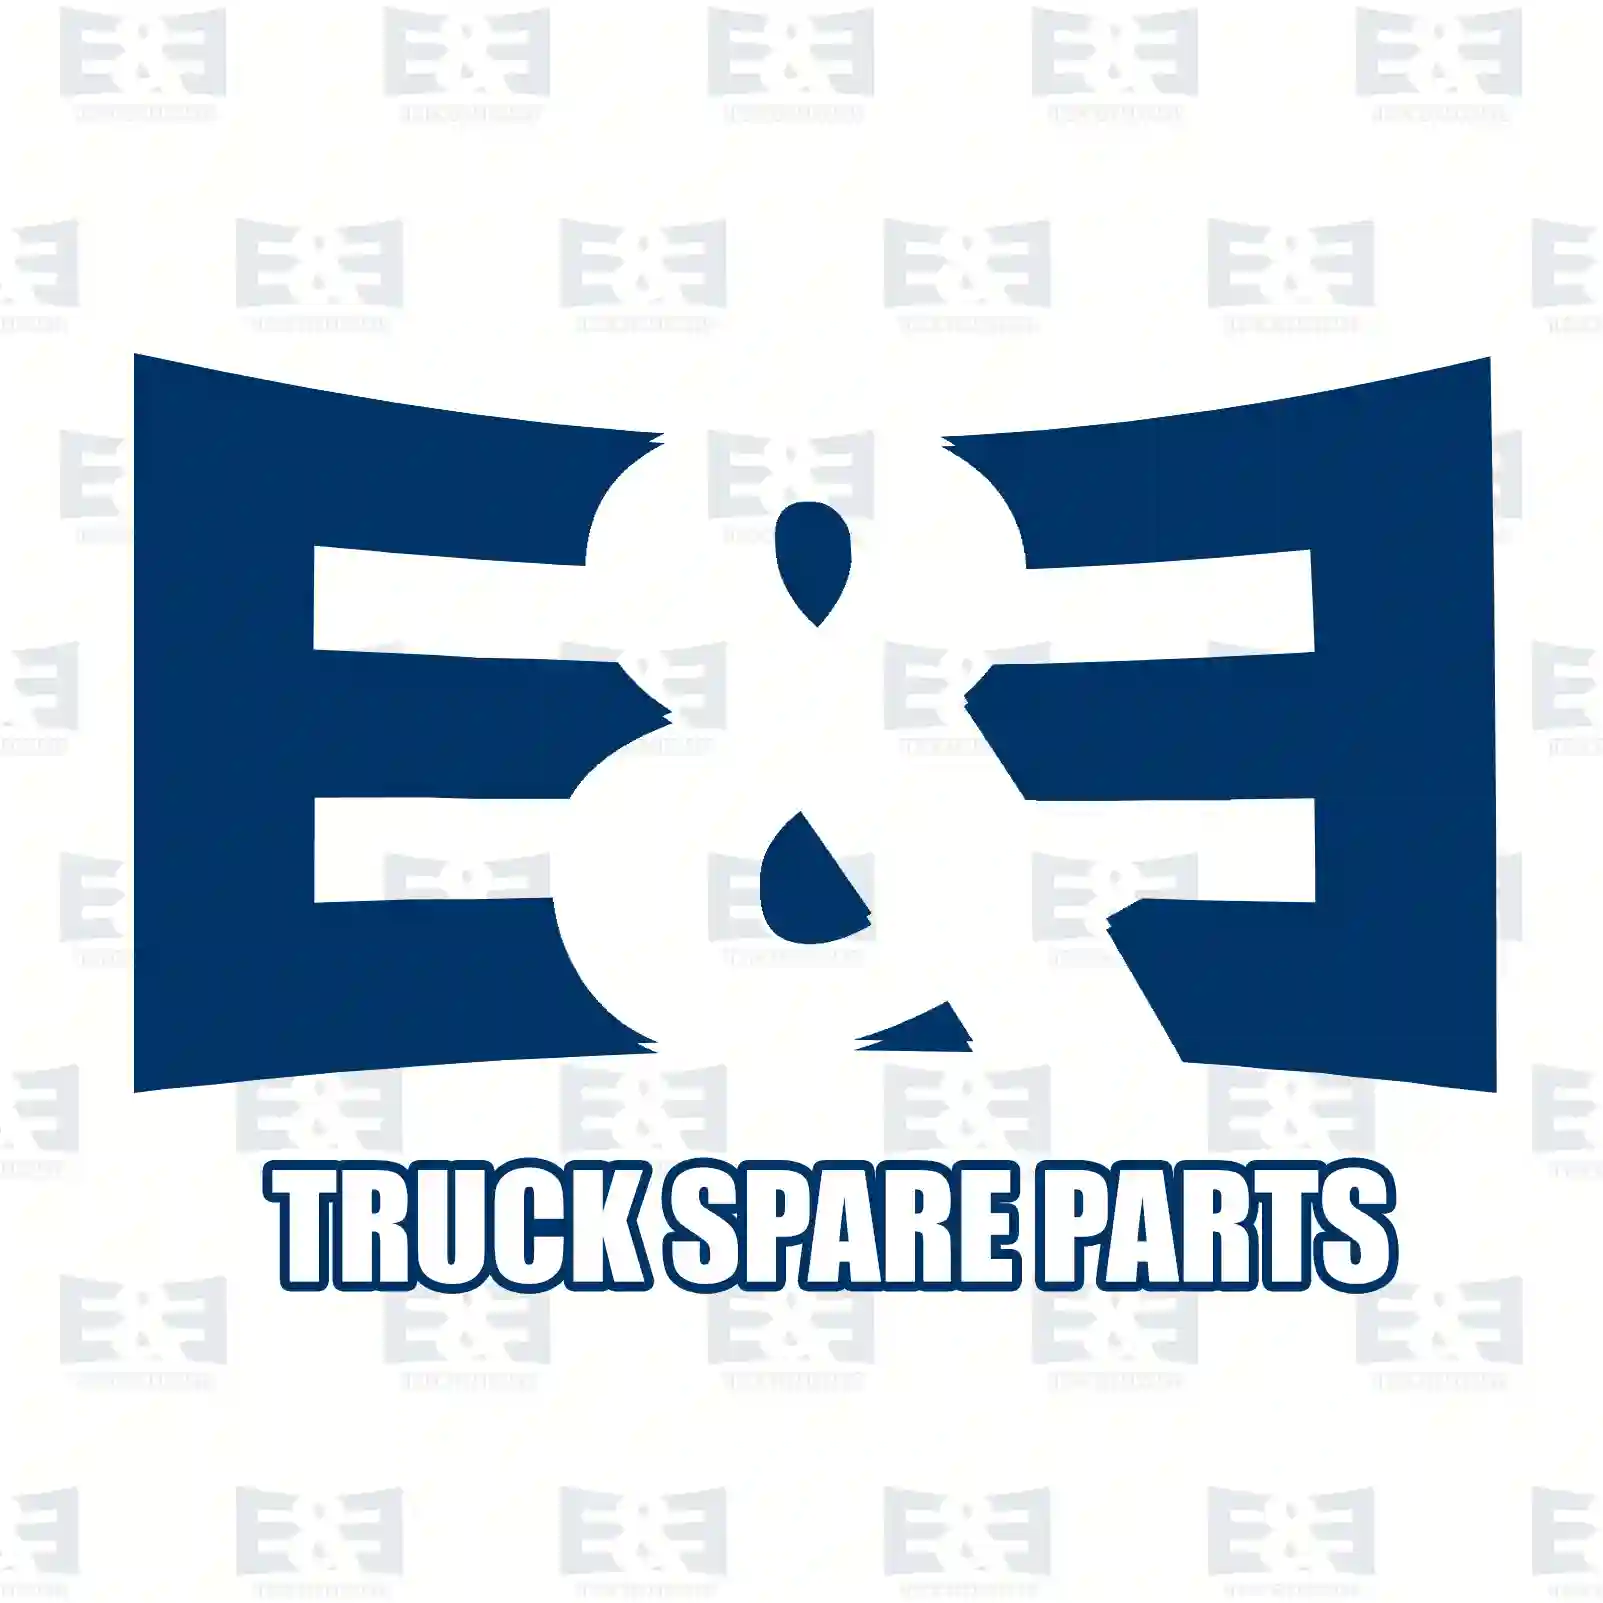 Hose clamp, 2E2285570, 0201259, 0652133, 201259, 652133, 41225564, 5801765706, 06671210221, 06671234419, 000000001467, 5010552410, 1101157, 1383519, 1466105, 816135, ZG00448-0008 ||  2E2285570 E&E Truck Spare Parts | Truck Spare Parts, Auotomotive Spare Parts Hose clamp, 2E2285570, 0201259, 0652133, 201259, 652133, 41225564, 5801765706, 06671210221, 06671234419, 000000001467, 5010552410, 1101157, 1383519, 1466105, 816135, ZG00448-0008 ||  2E2285570 E&E Truck Spare Parts | Truck Spare Parts, Auotomotive Spare Parts